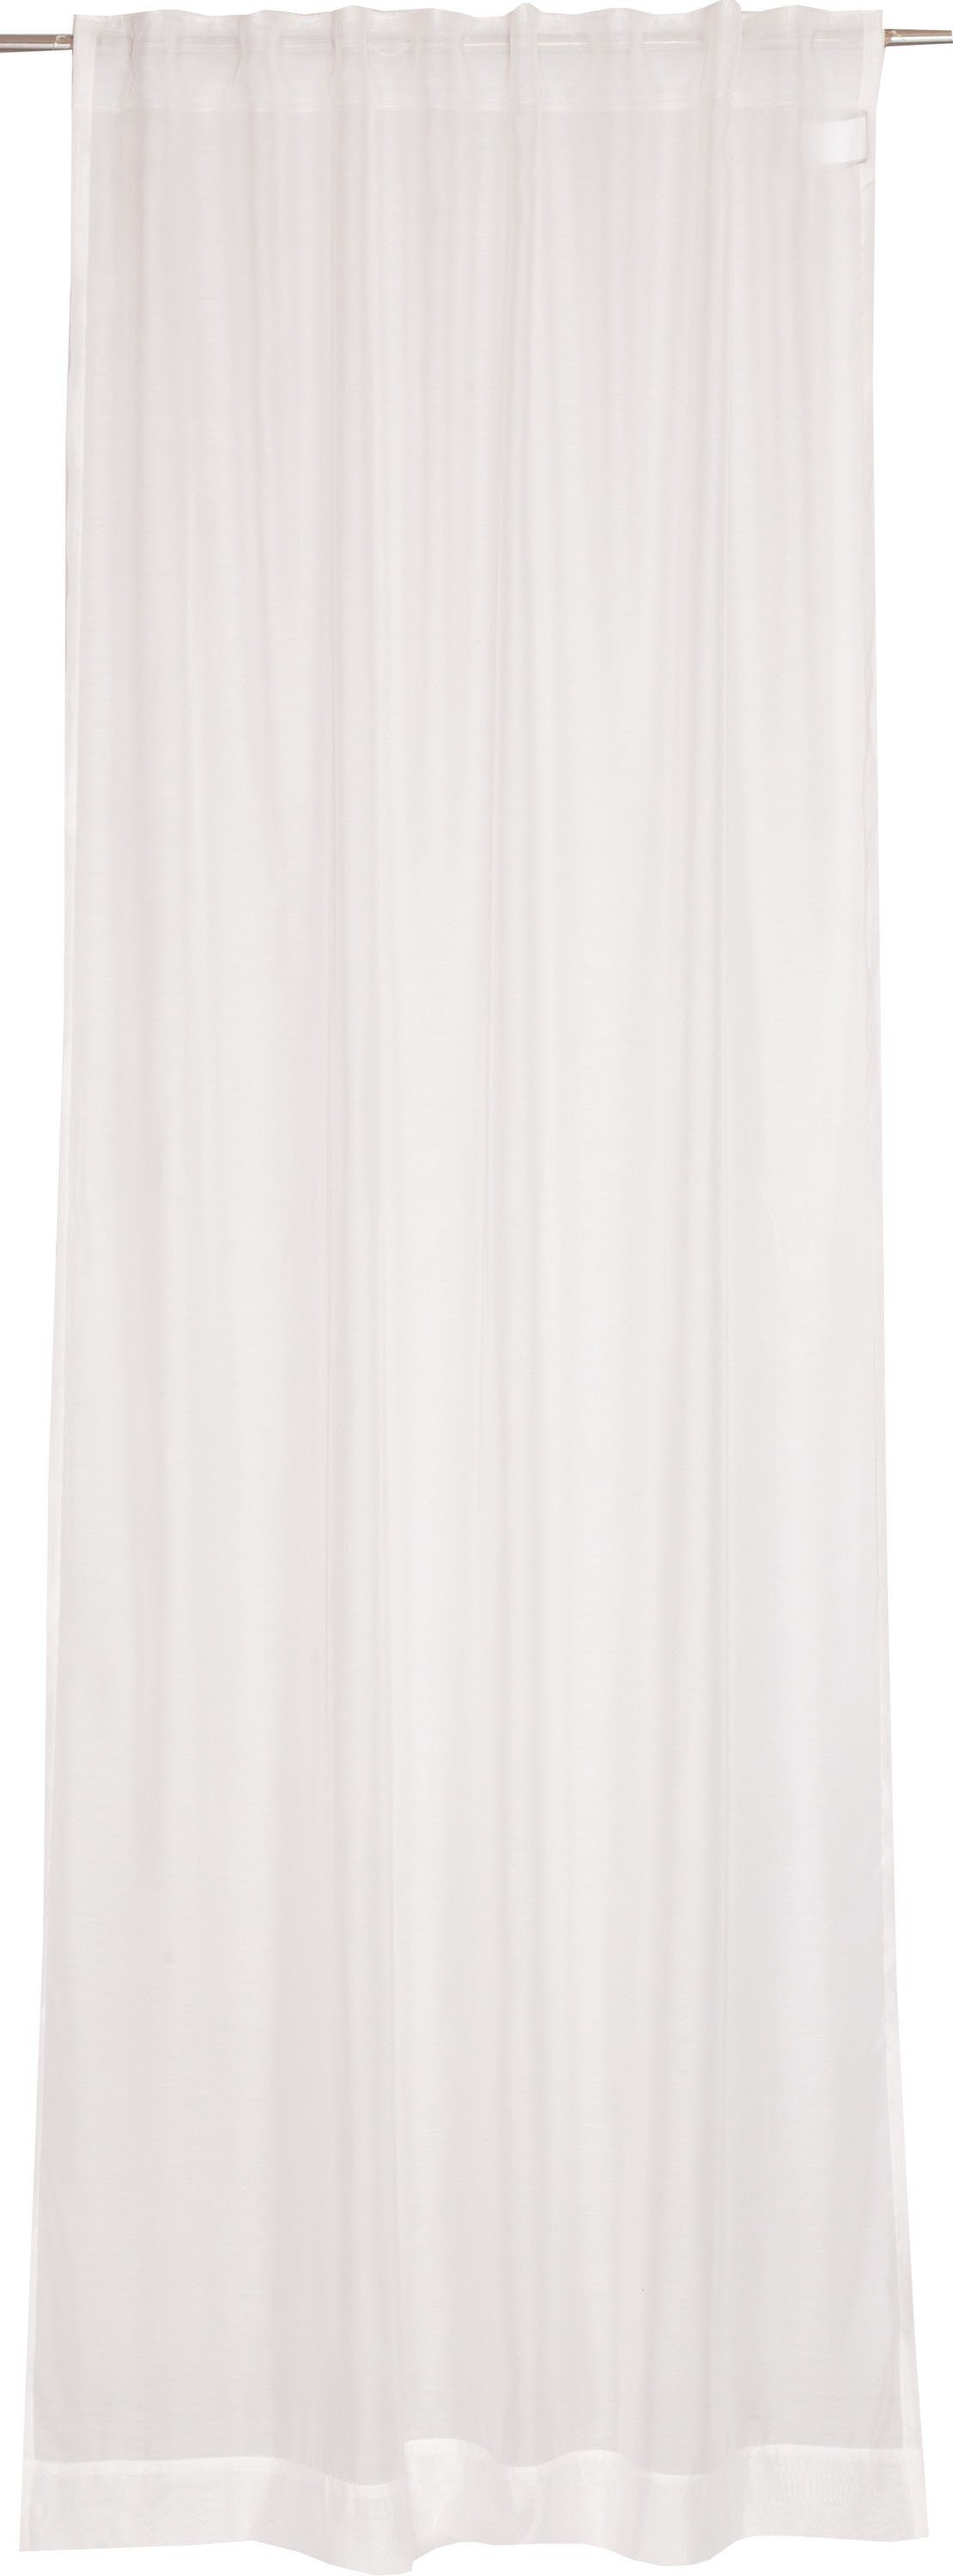 Vorhang Solid, SCHÖNER WOHNEN-Kollektion, Multifunktionsband (1 St), halbtransparent, Jacquard, im zeilosen, unifarbenen Look wollweiß/offwhite/weiß